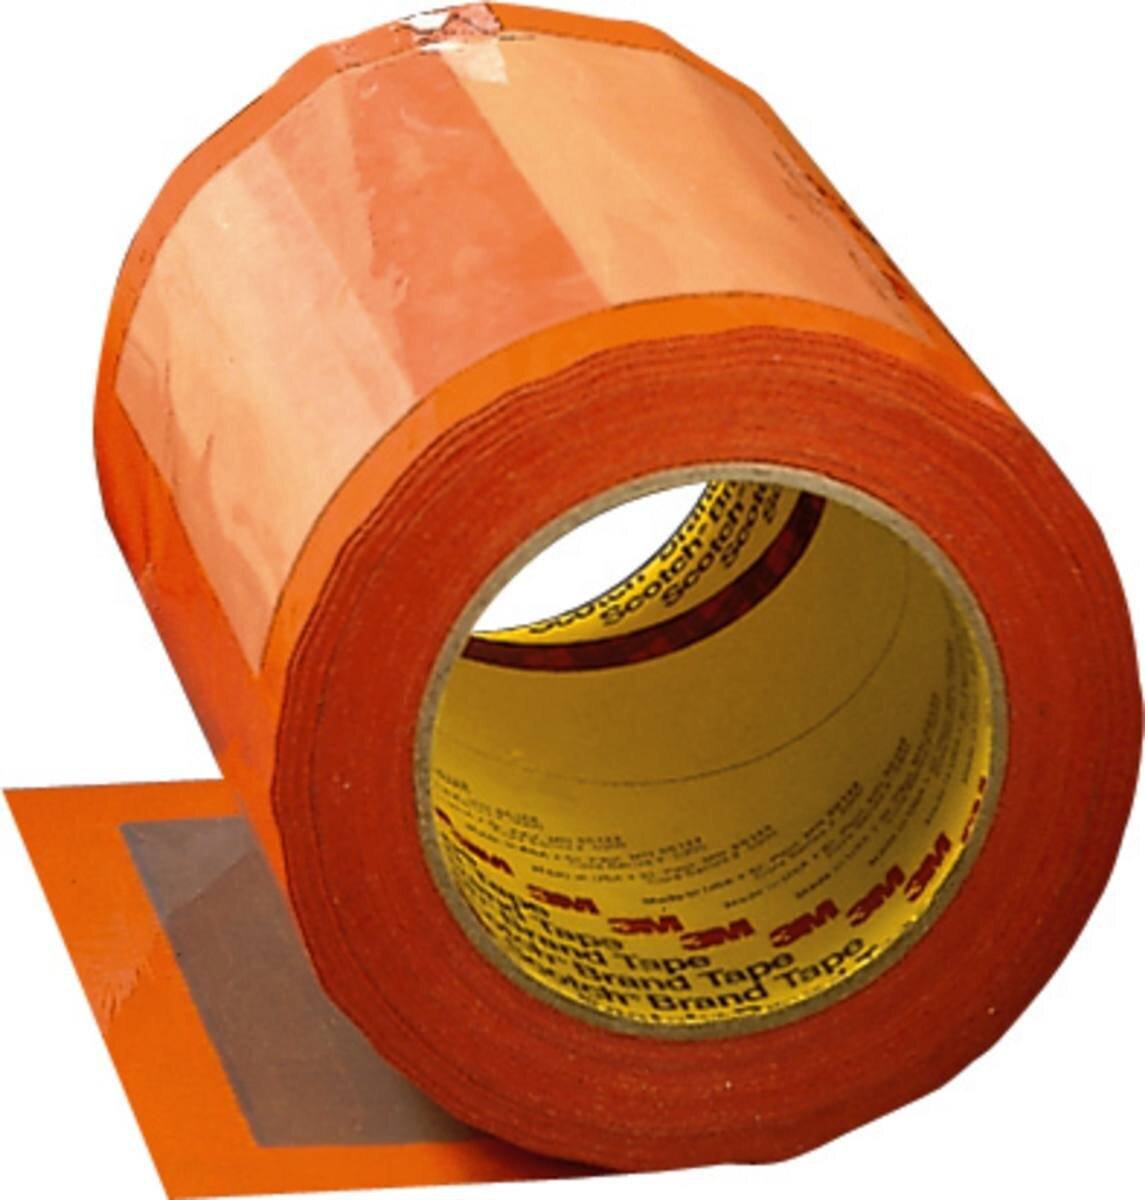 3M Scotch Pouch Tape protezione documenti 8242 trasparente, trasparente, 150 mm x 66 m, 0,053 mm